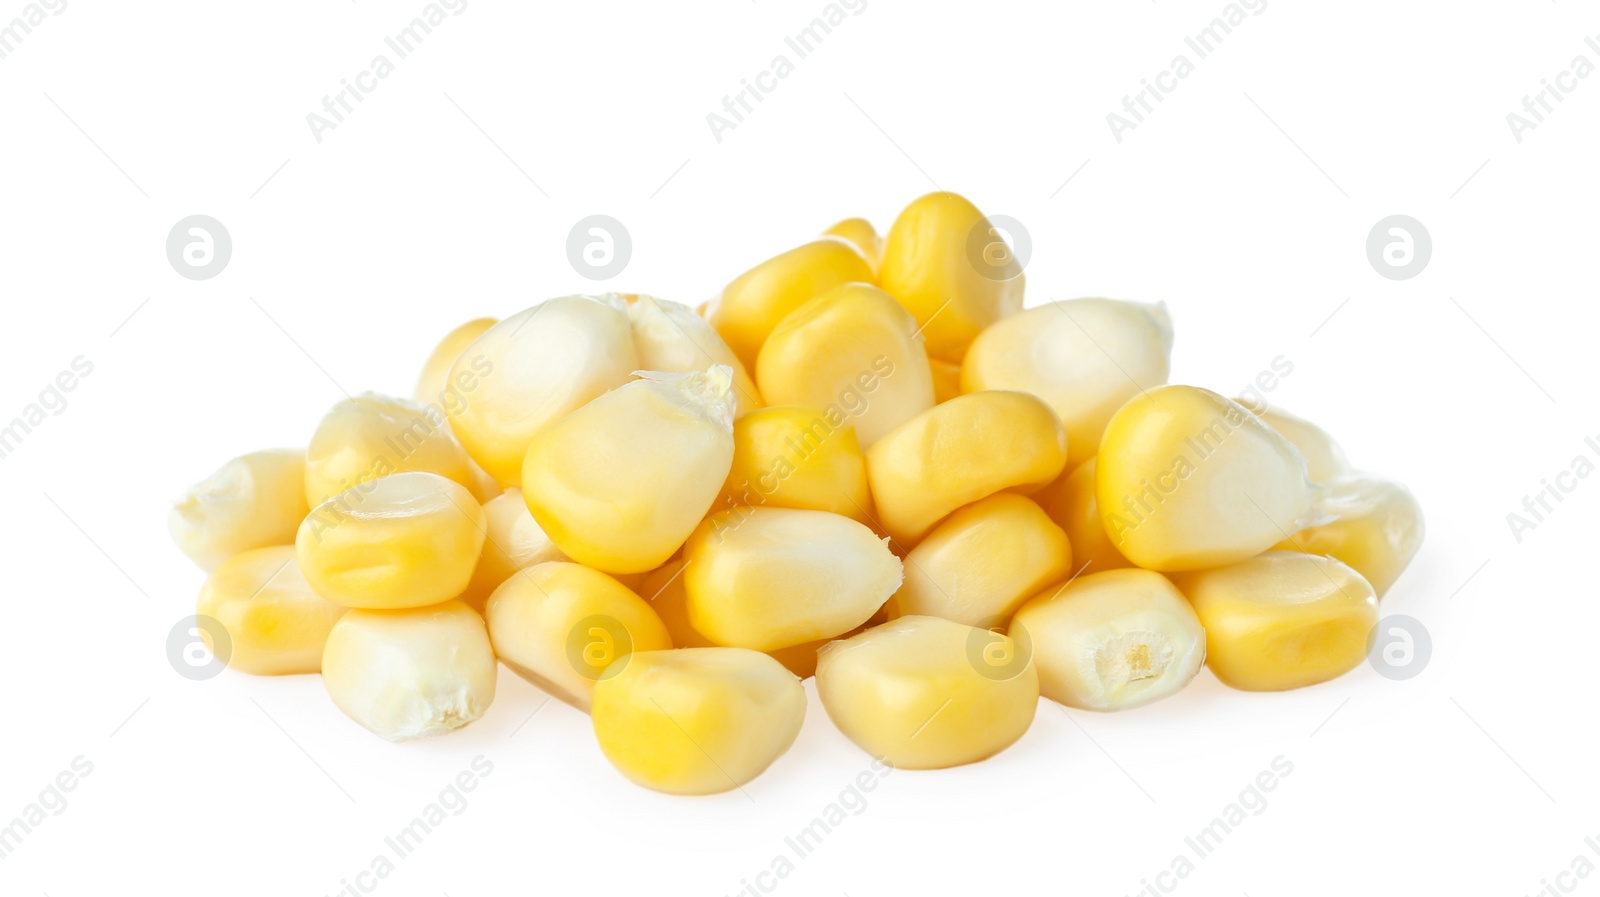 Photo of Pile of tasty fresh corn kernels on white background